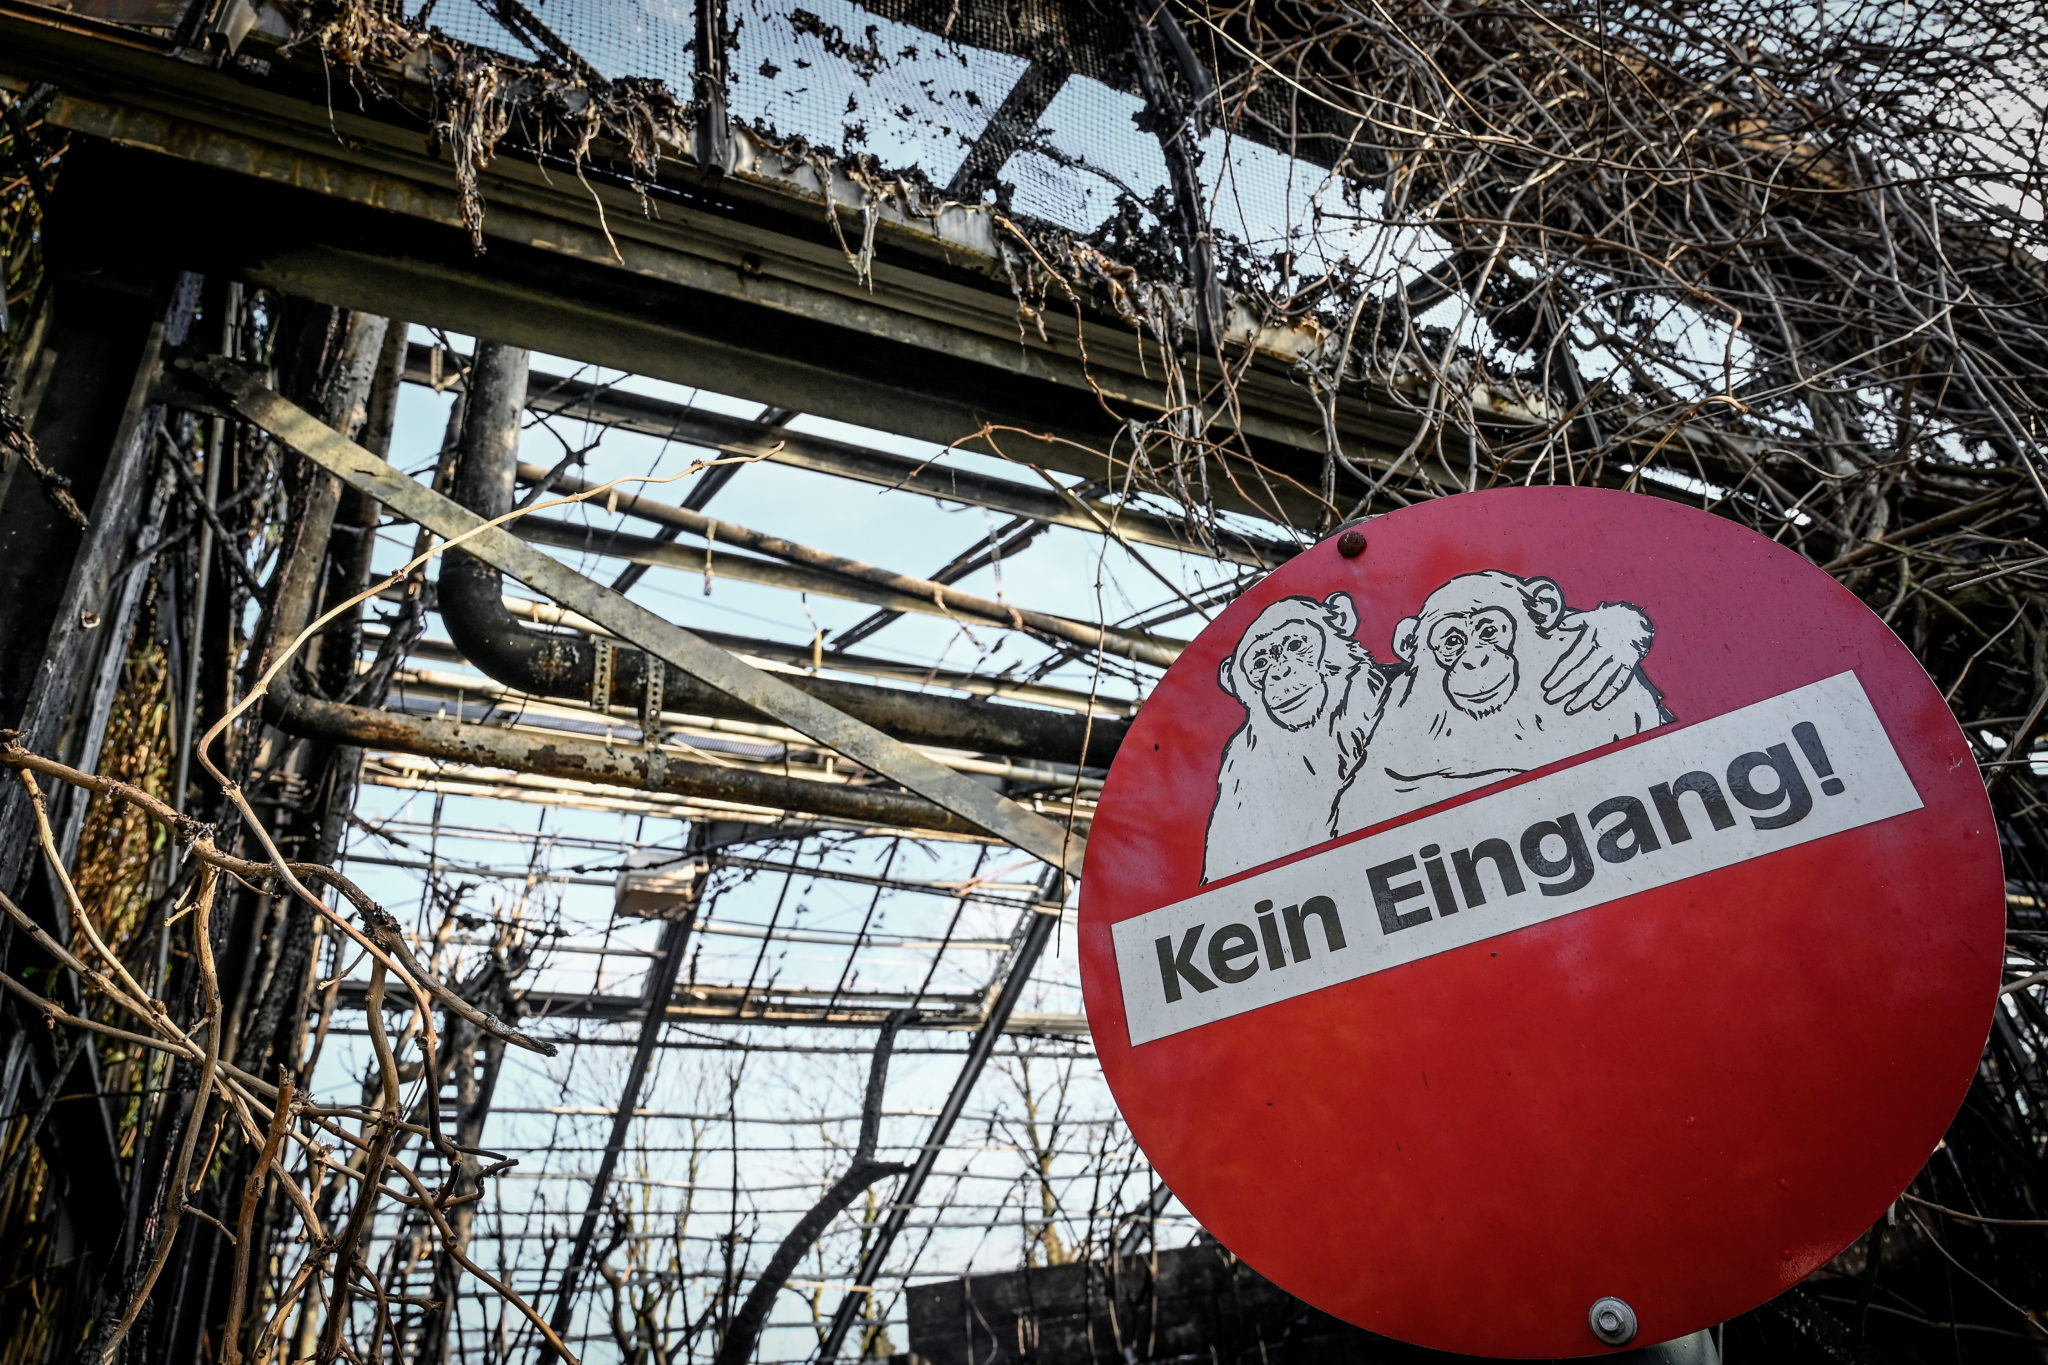 Tragiczny pożar zoo w niemieckim mieście Krefeld. W sylwestrową noc spłonęły pomieszczenia i wybiegi dla małp człekokształtnych w miejscowym ogrodzie zoologicznym. W płomieniach zginęło ponad 30 zwierząt, fot. EPA/SASCHA STEINBACH 